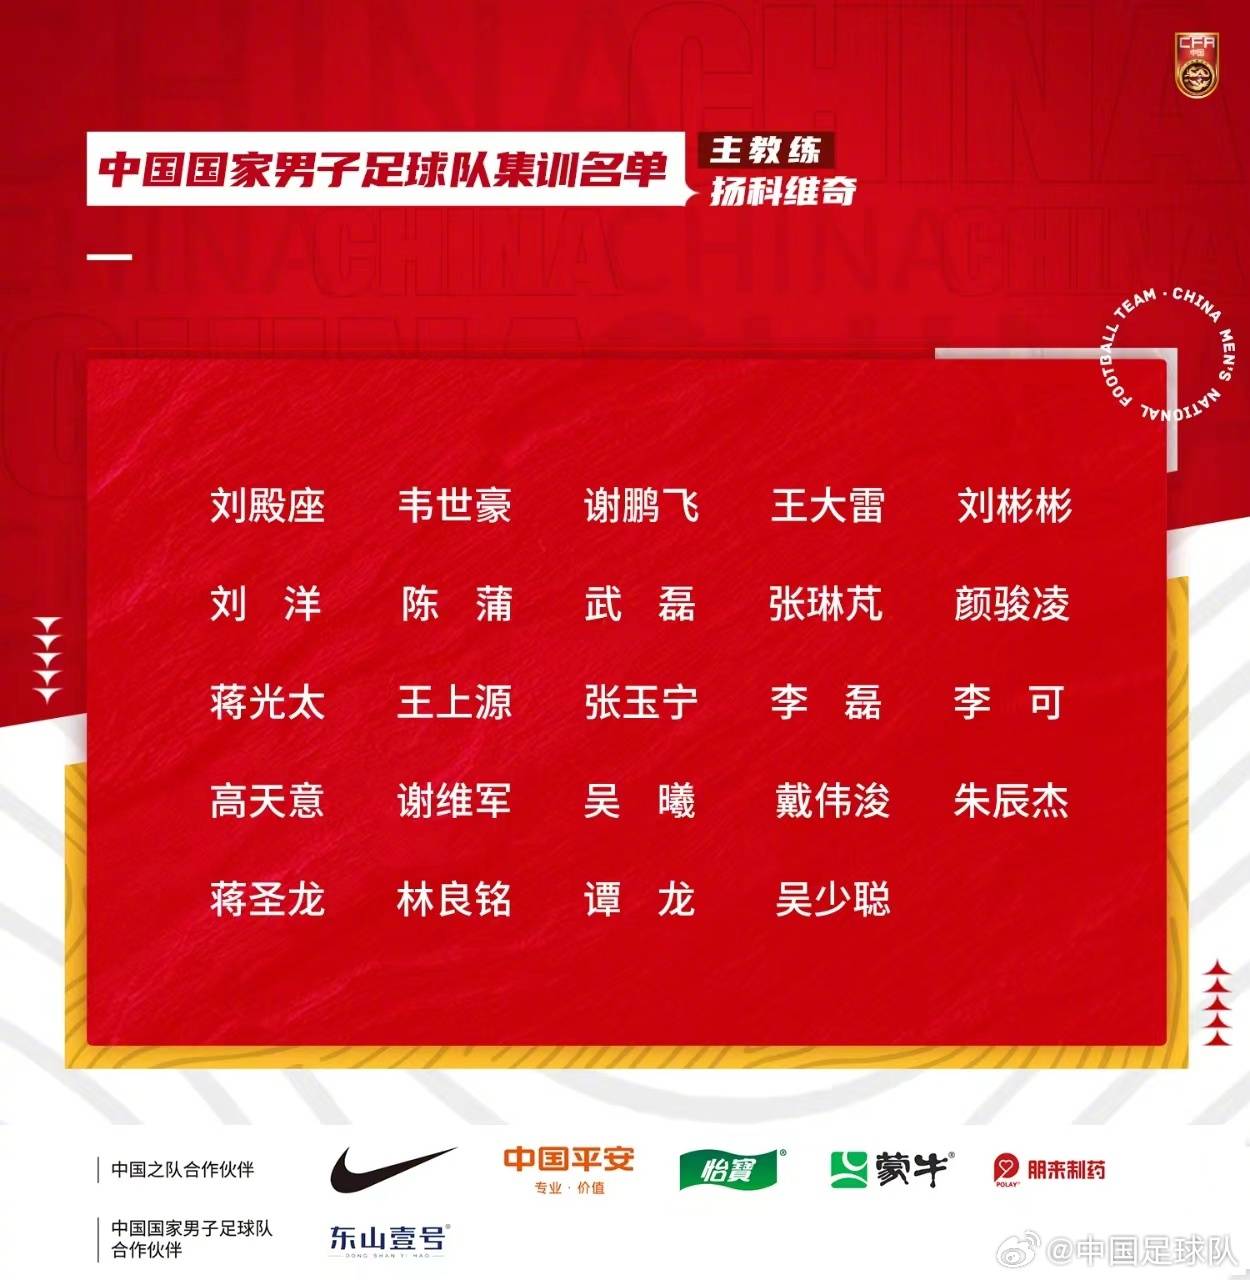 国足世界预赛大名单由吴磊、张玉宁领衔 艾克森落选